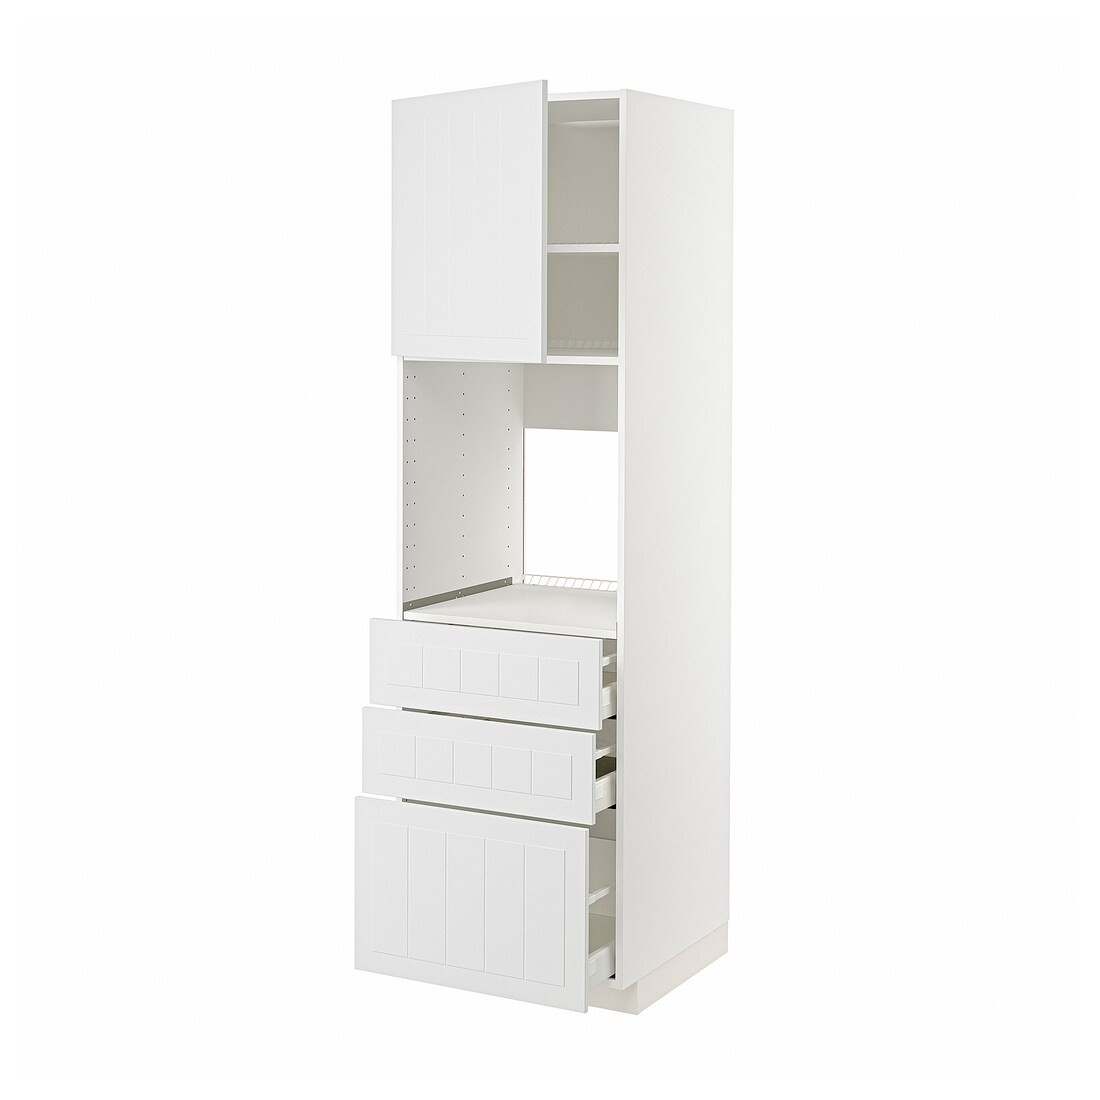 METOD МЕТОД / MAXIMERA МАКСИМЕРА Высокий шкаф для духовки, белый / Stensund белый, 60x60x200 см